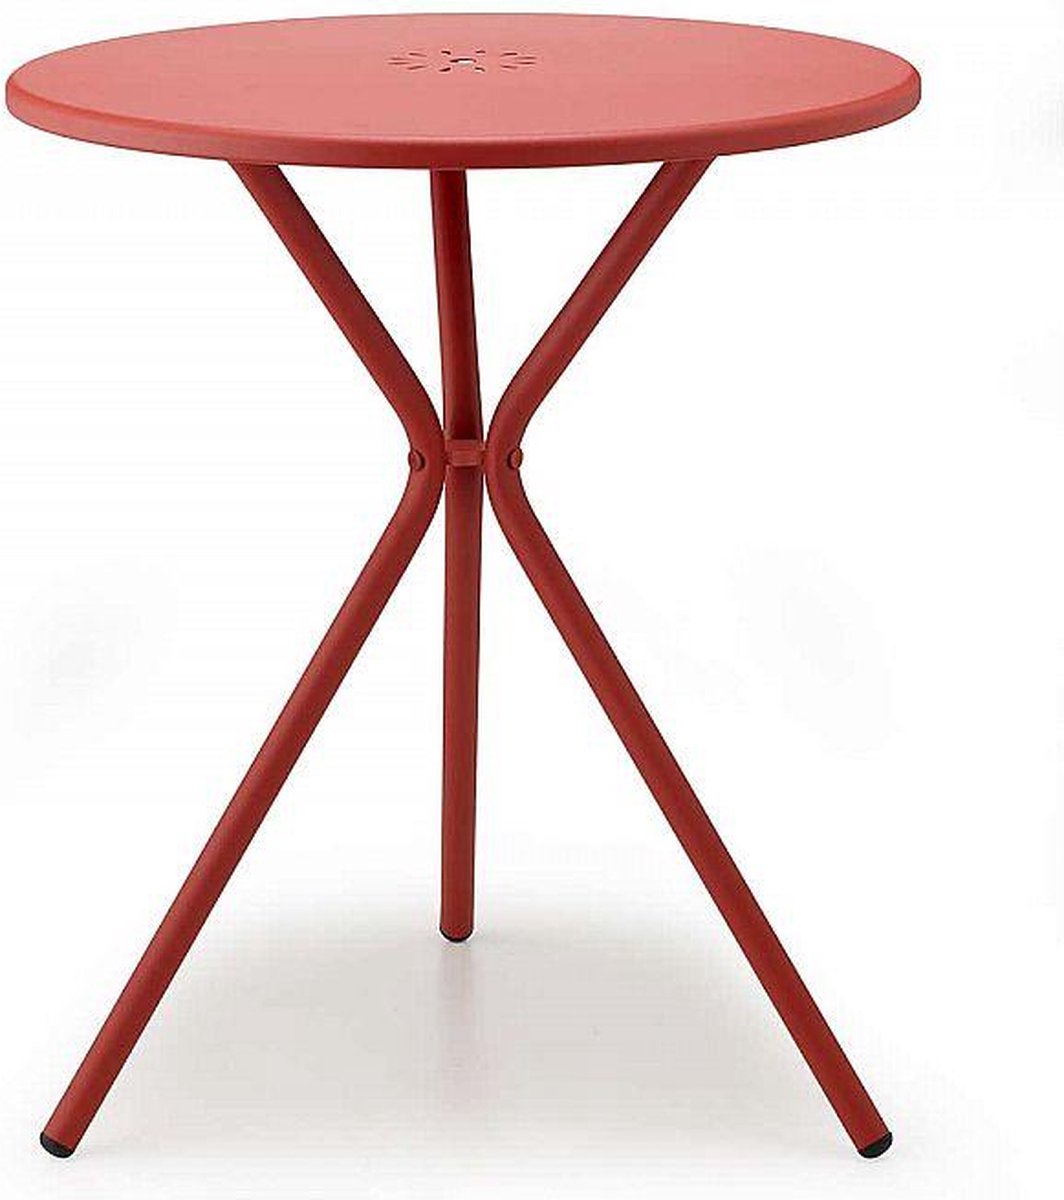 Kyra bistrotafeltje. Leuk designtafeltje in de kleur rood, voor als u een klein terrasje hebt. Slank model geschikt voor 2 stoelen. Alleen verkrijgbaar per 2 stuks.